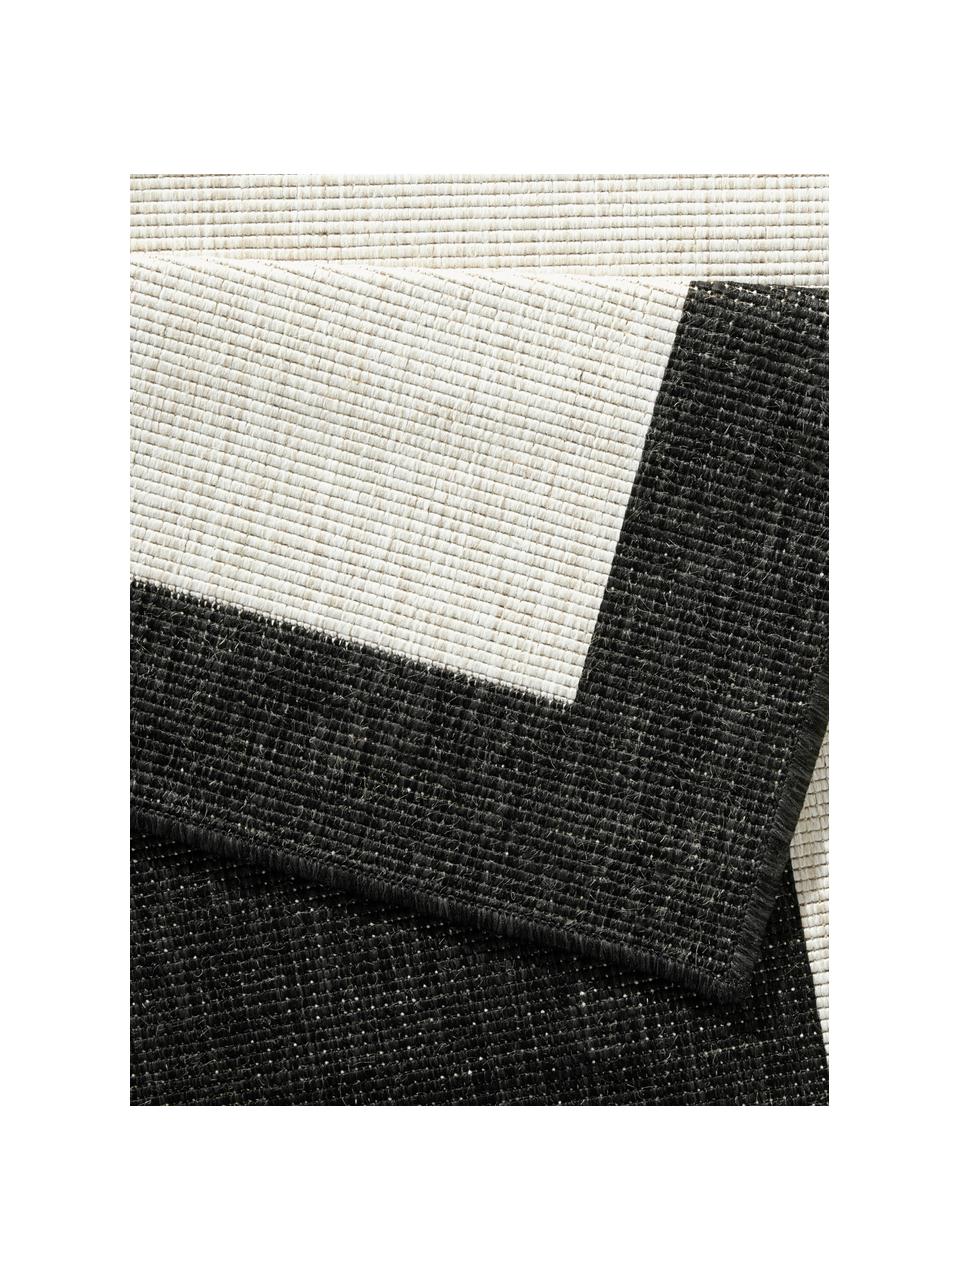 Obojstranný koberec (do interiéru/exteriéru) Panama, Čierna, krémová, D 150 x Š 80 cm